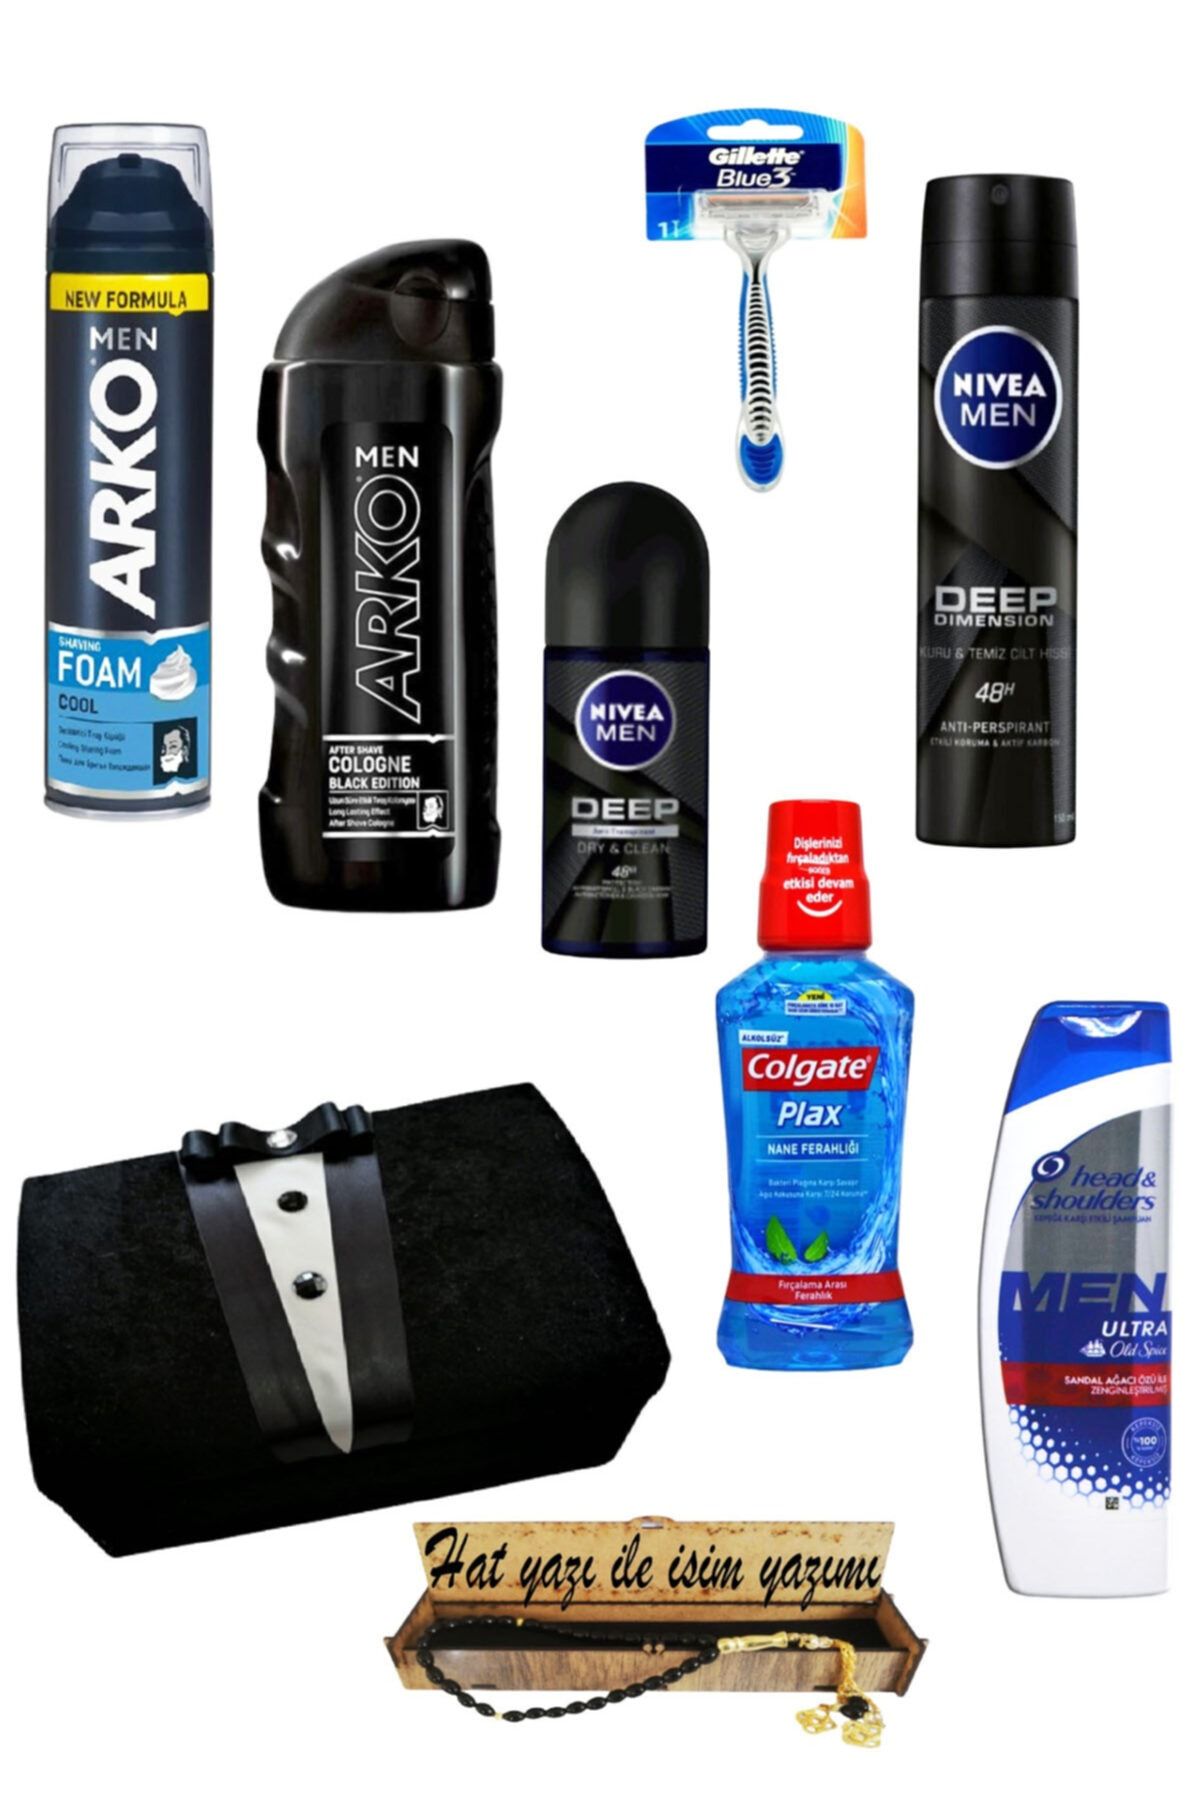 NIVEA Erkek Bakım Ürünleri - Damat Tıraş Seti- Damat Bohçası - Tıraş Seti